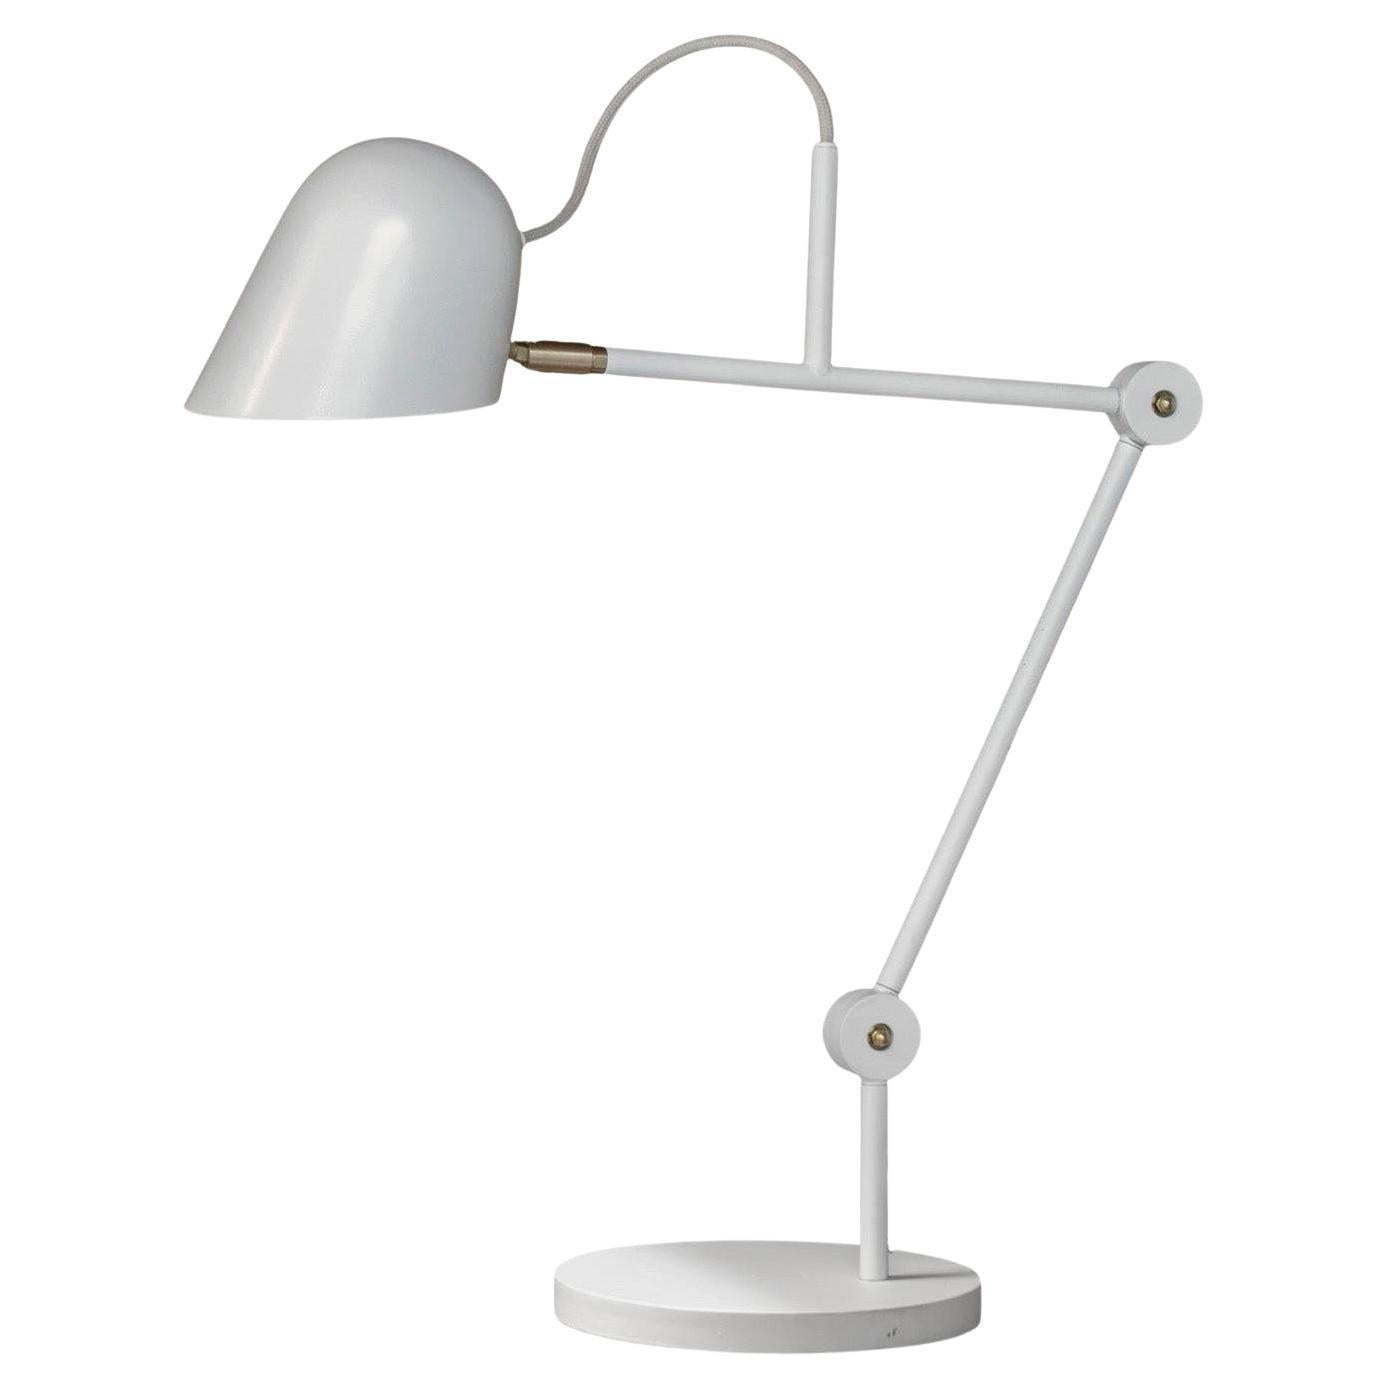 'Streck' Adjustable Table Lamp by Joel Karlsson for Örsjö in Warm Gray For Sale 4